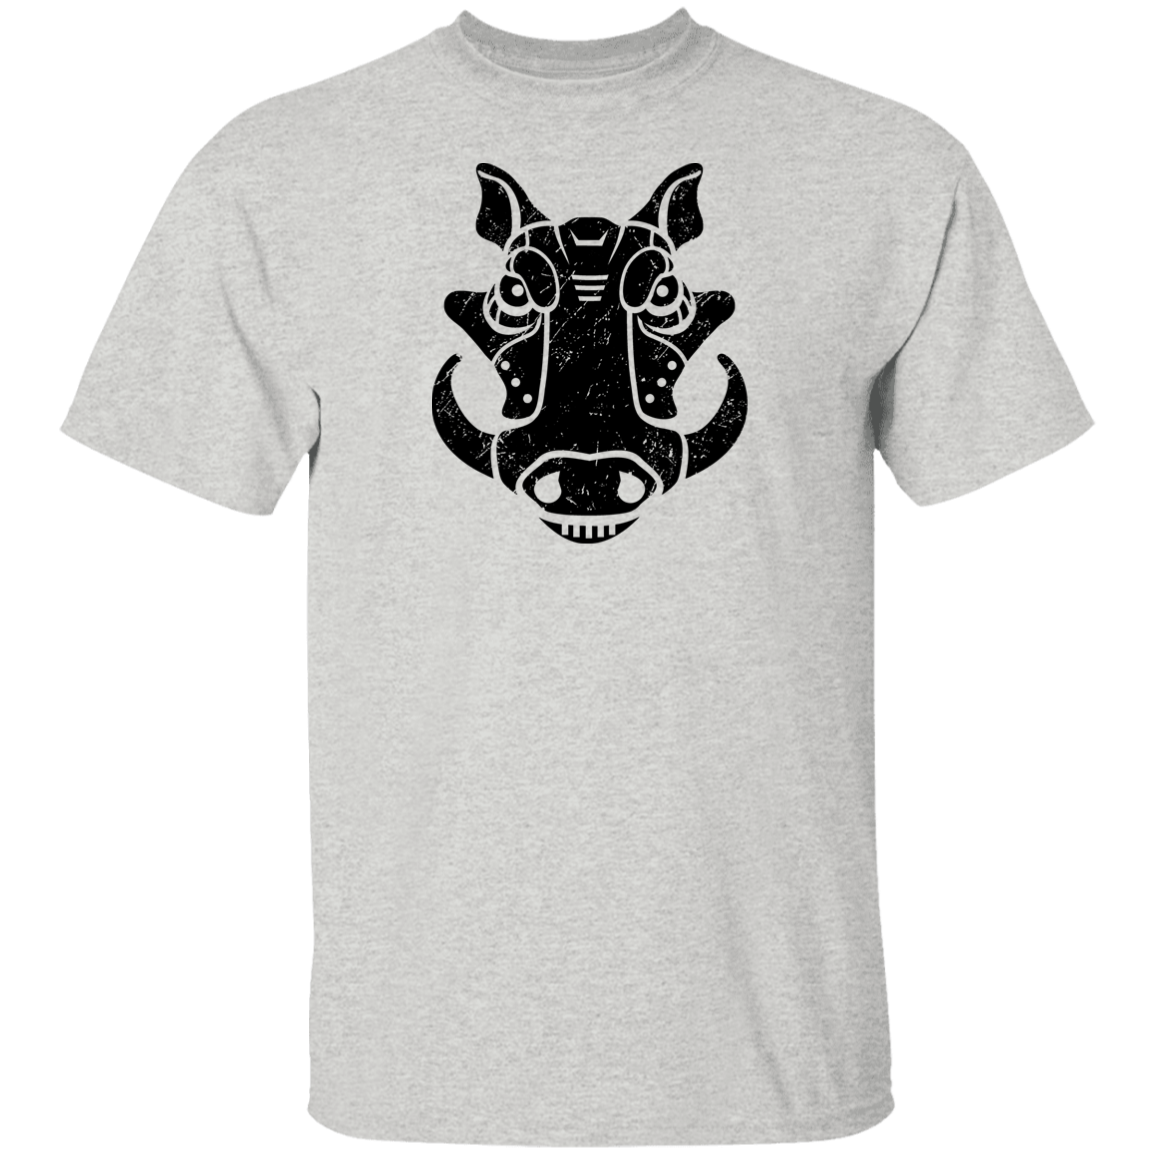 Black Distressed Emblem T-Shirt for Kids (Warthog/Bumper)